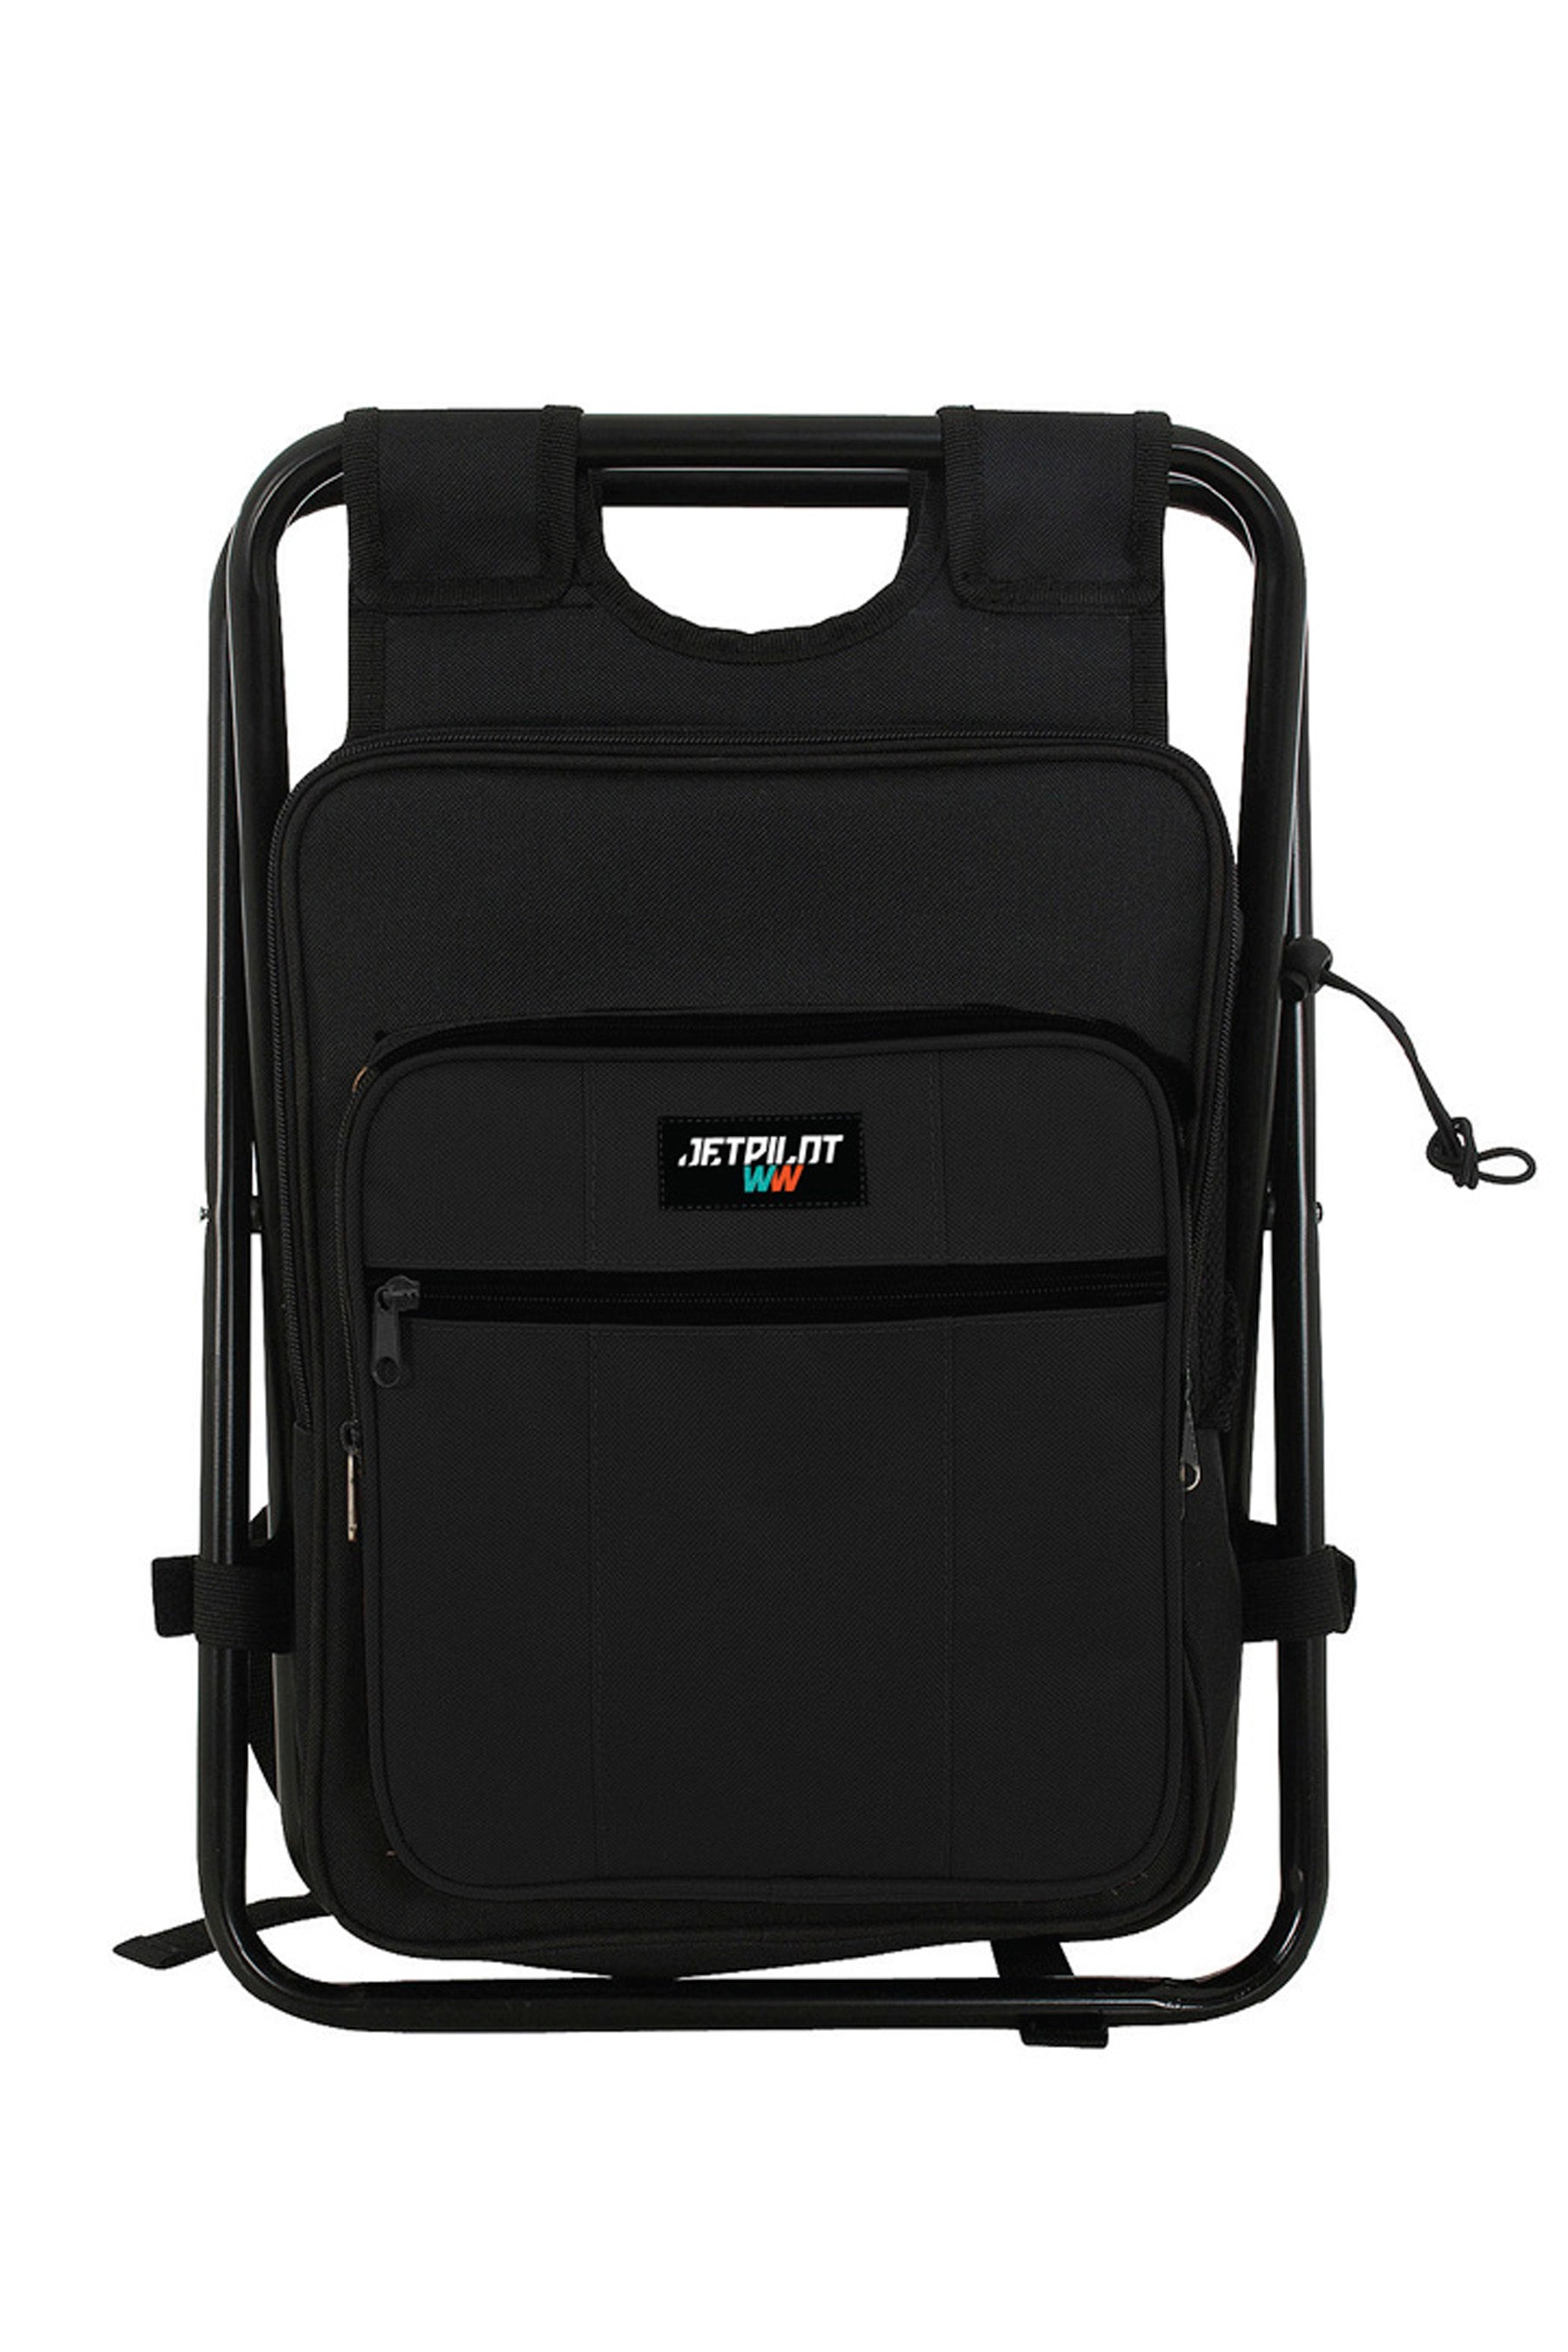 Jetpilot Chilled Seat Bag - Black 5